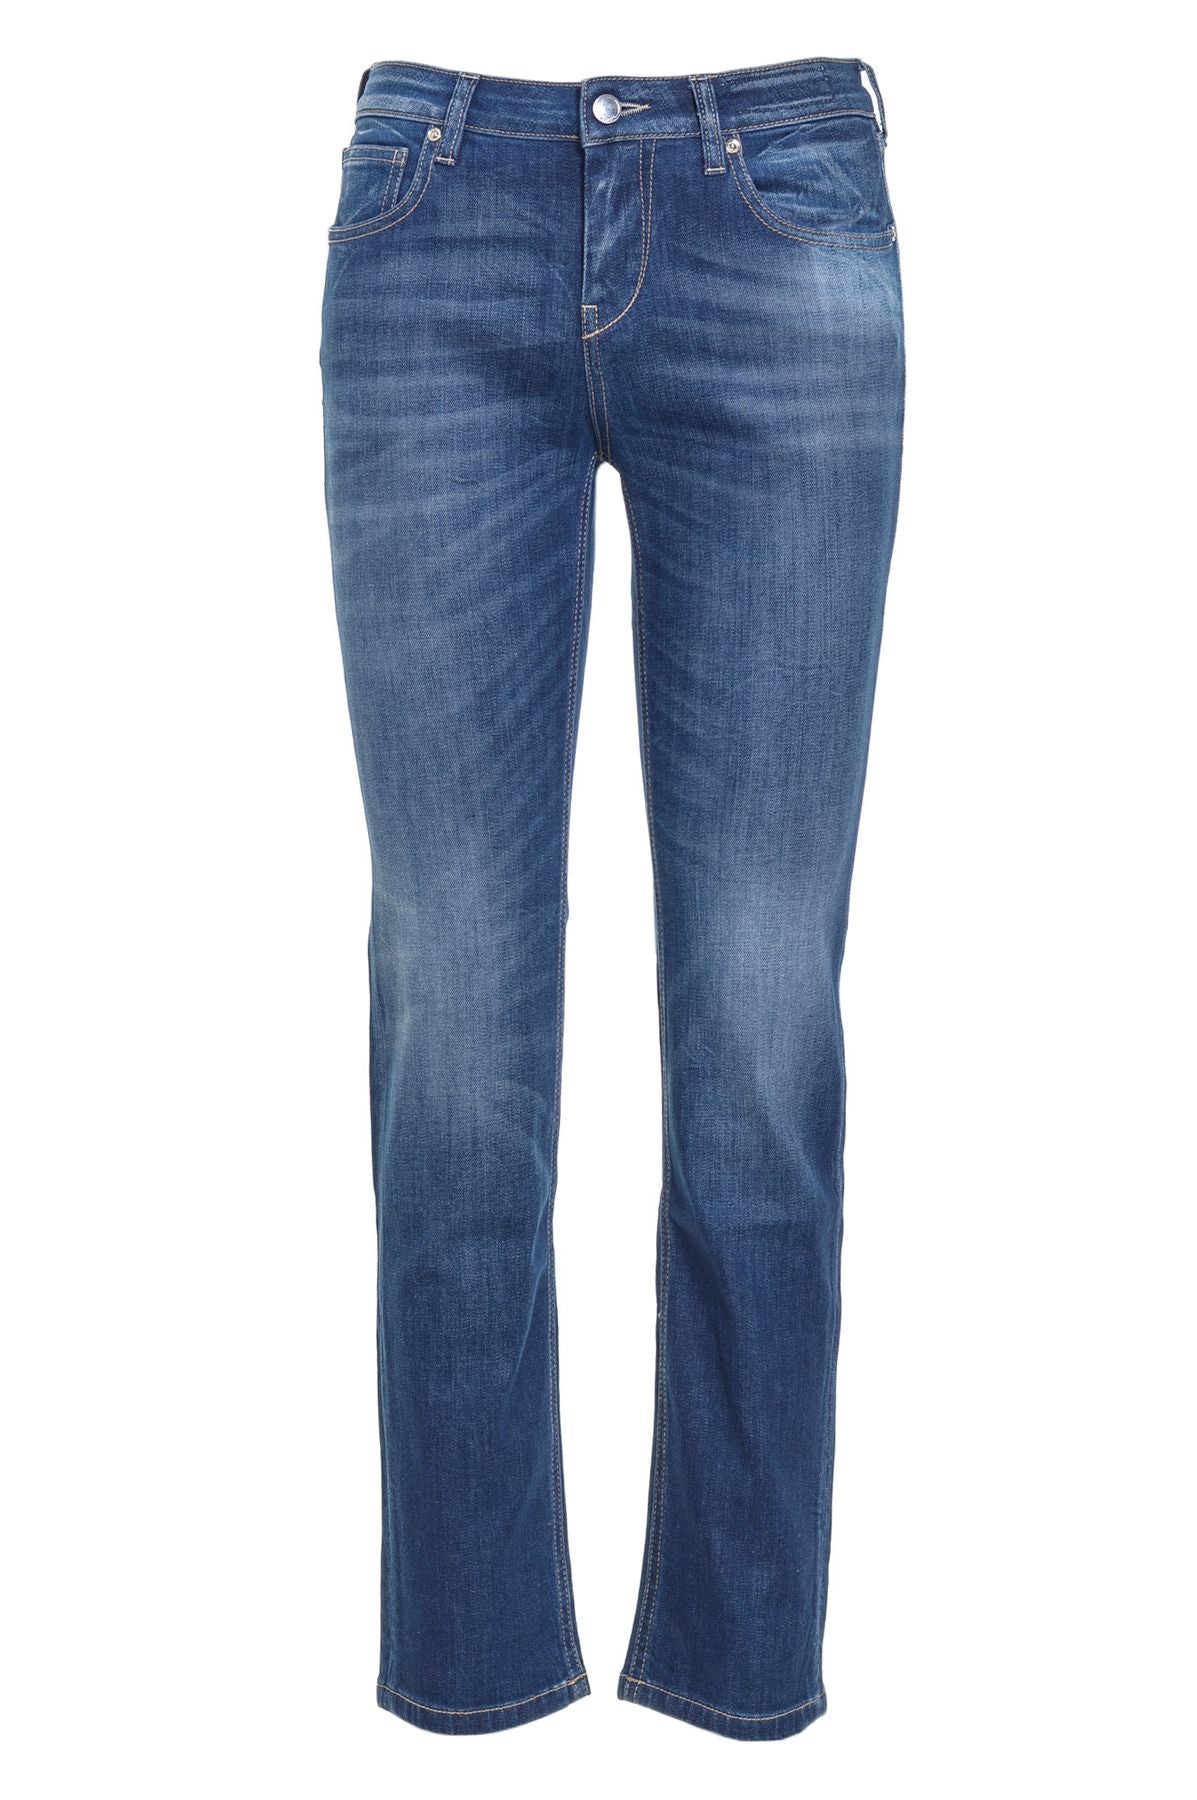 Re-HasH Jeans Autunno/Inverno p3572702carla